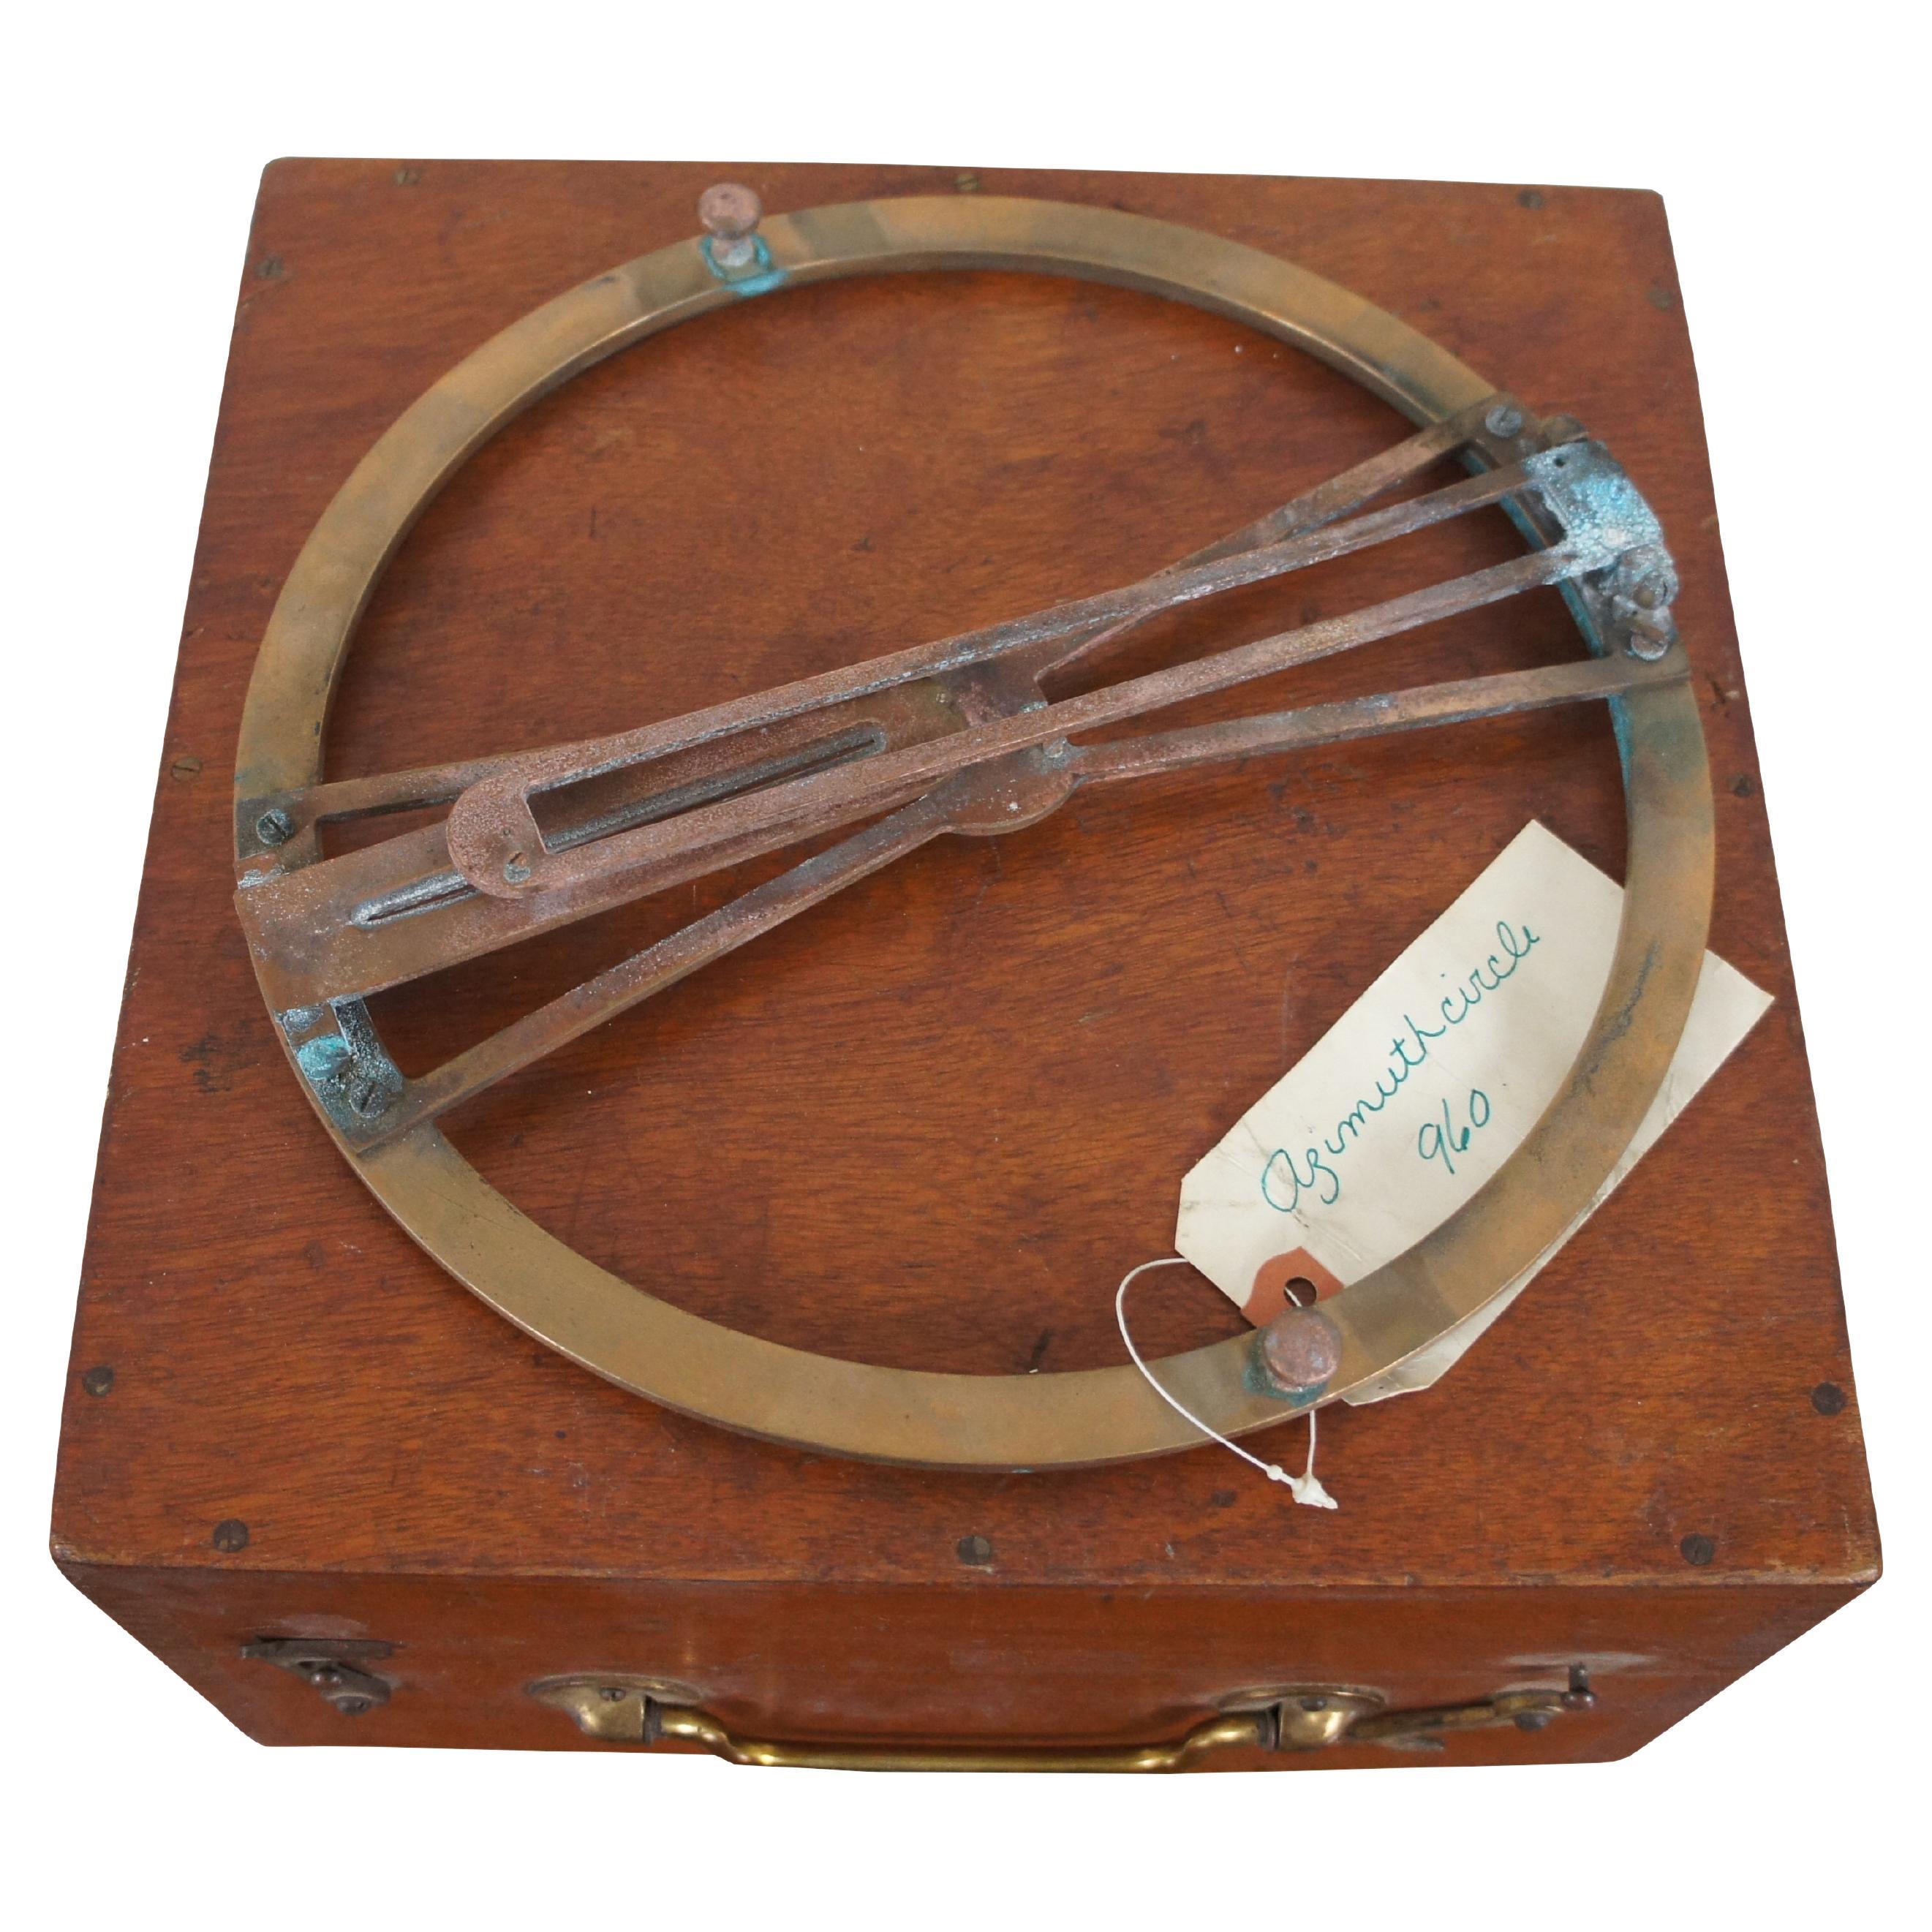 Instrument d'azimut du système Thomson datant de la Seconde Guerre mondiale et étui de rangement / transport en bois.

Un cercle d'azimut est un instrument de navigation qui se présente sous la forme d'un anneau de laiton muni d'une mire et qui se